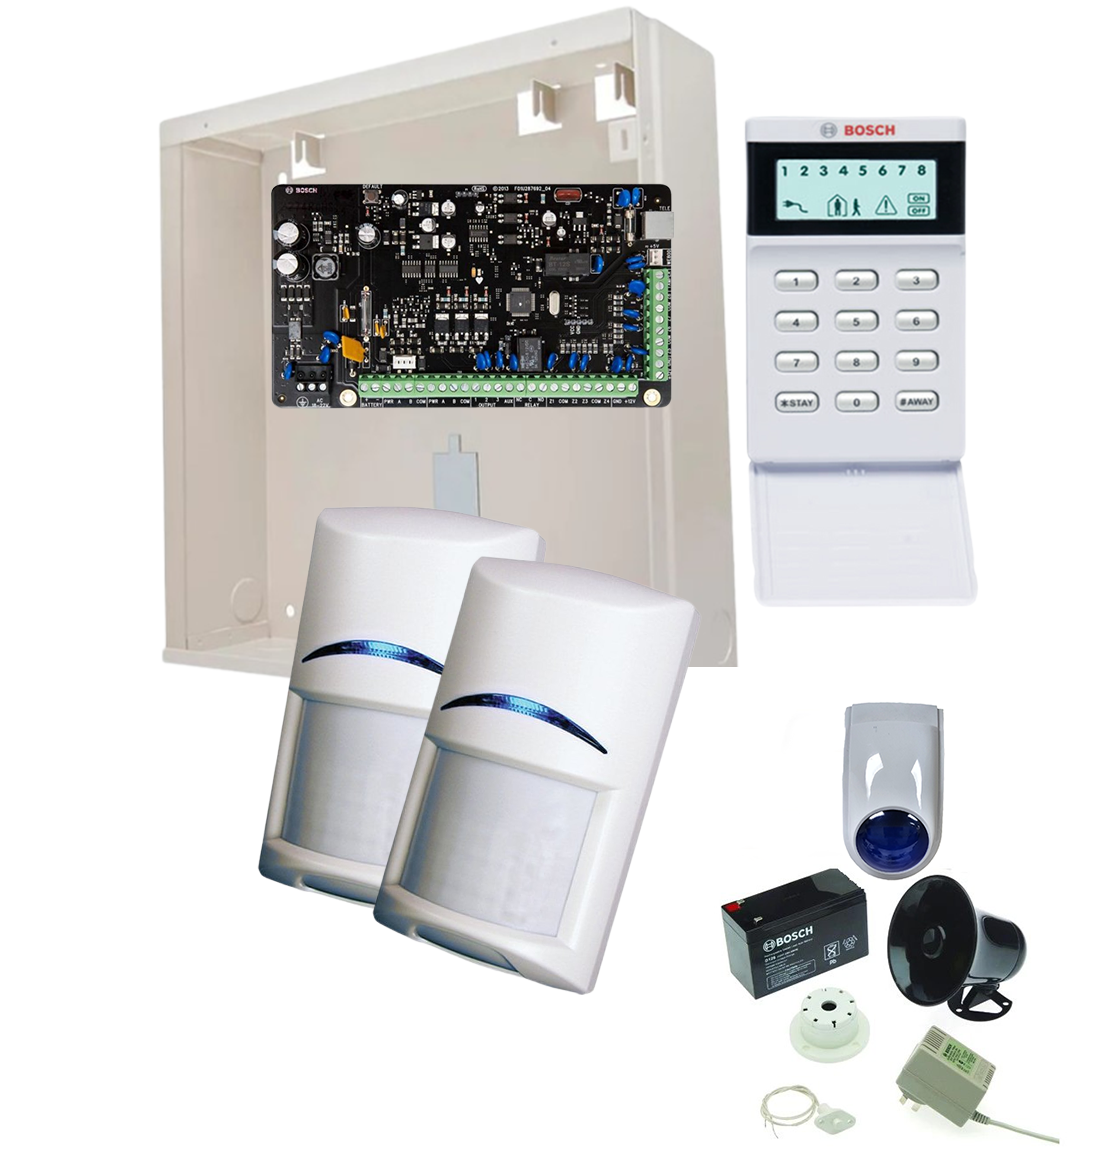 BOSCH, Solution 2000, Alarm kit, Includes ICP-SOL2-P panel, IUI-SOL-ICON LCD keypad, 2x ISC-BPQ2-W12 Quad PIR detectors